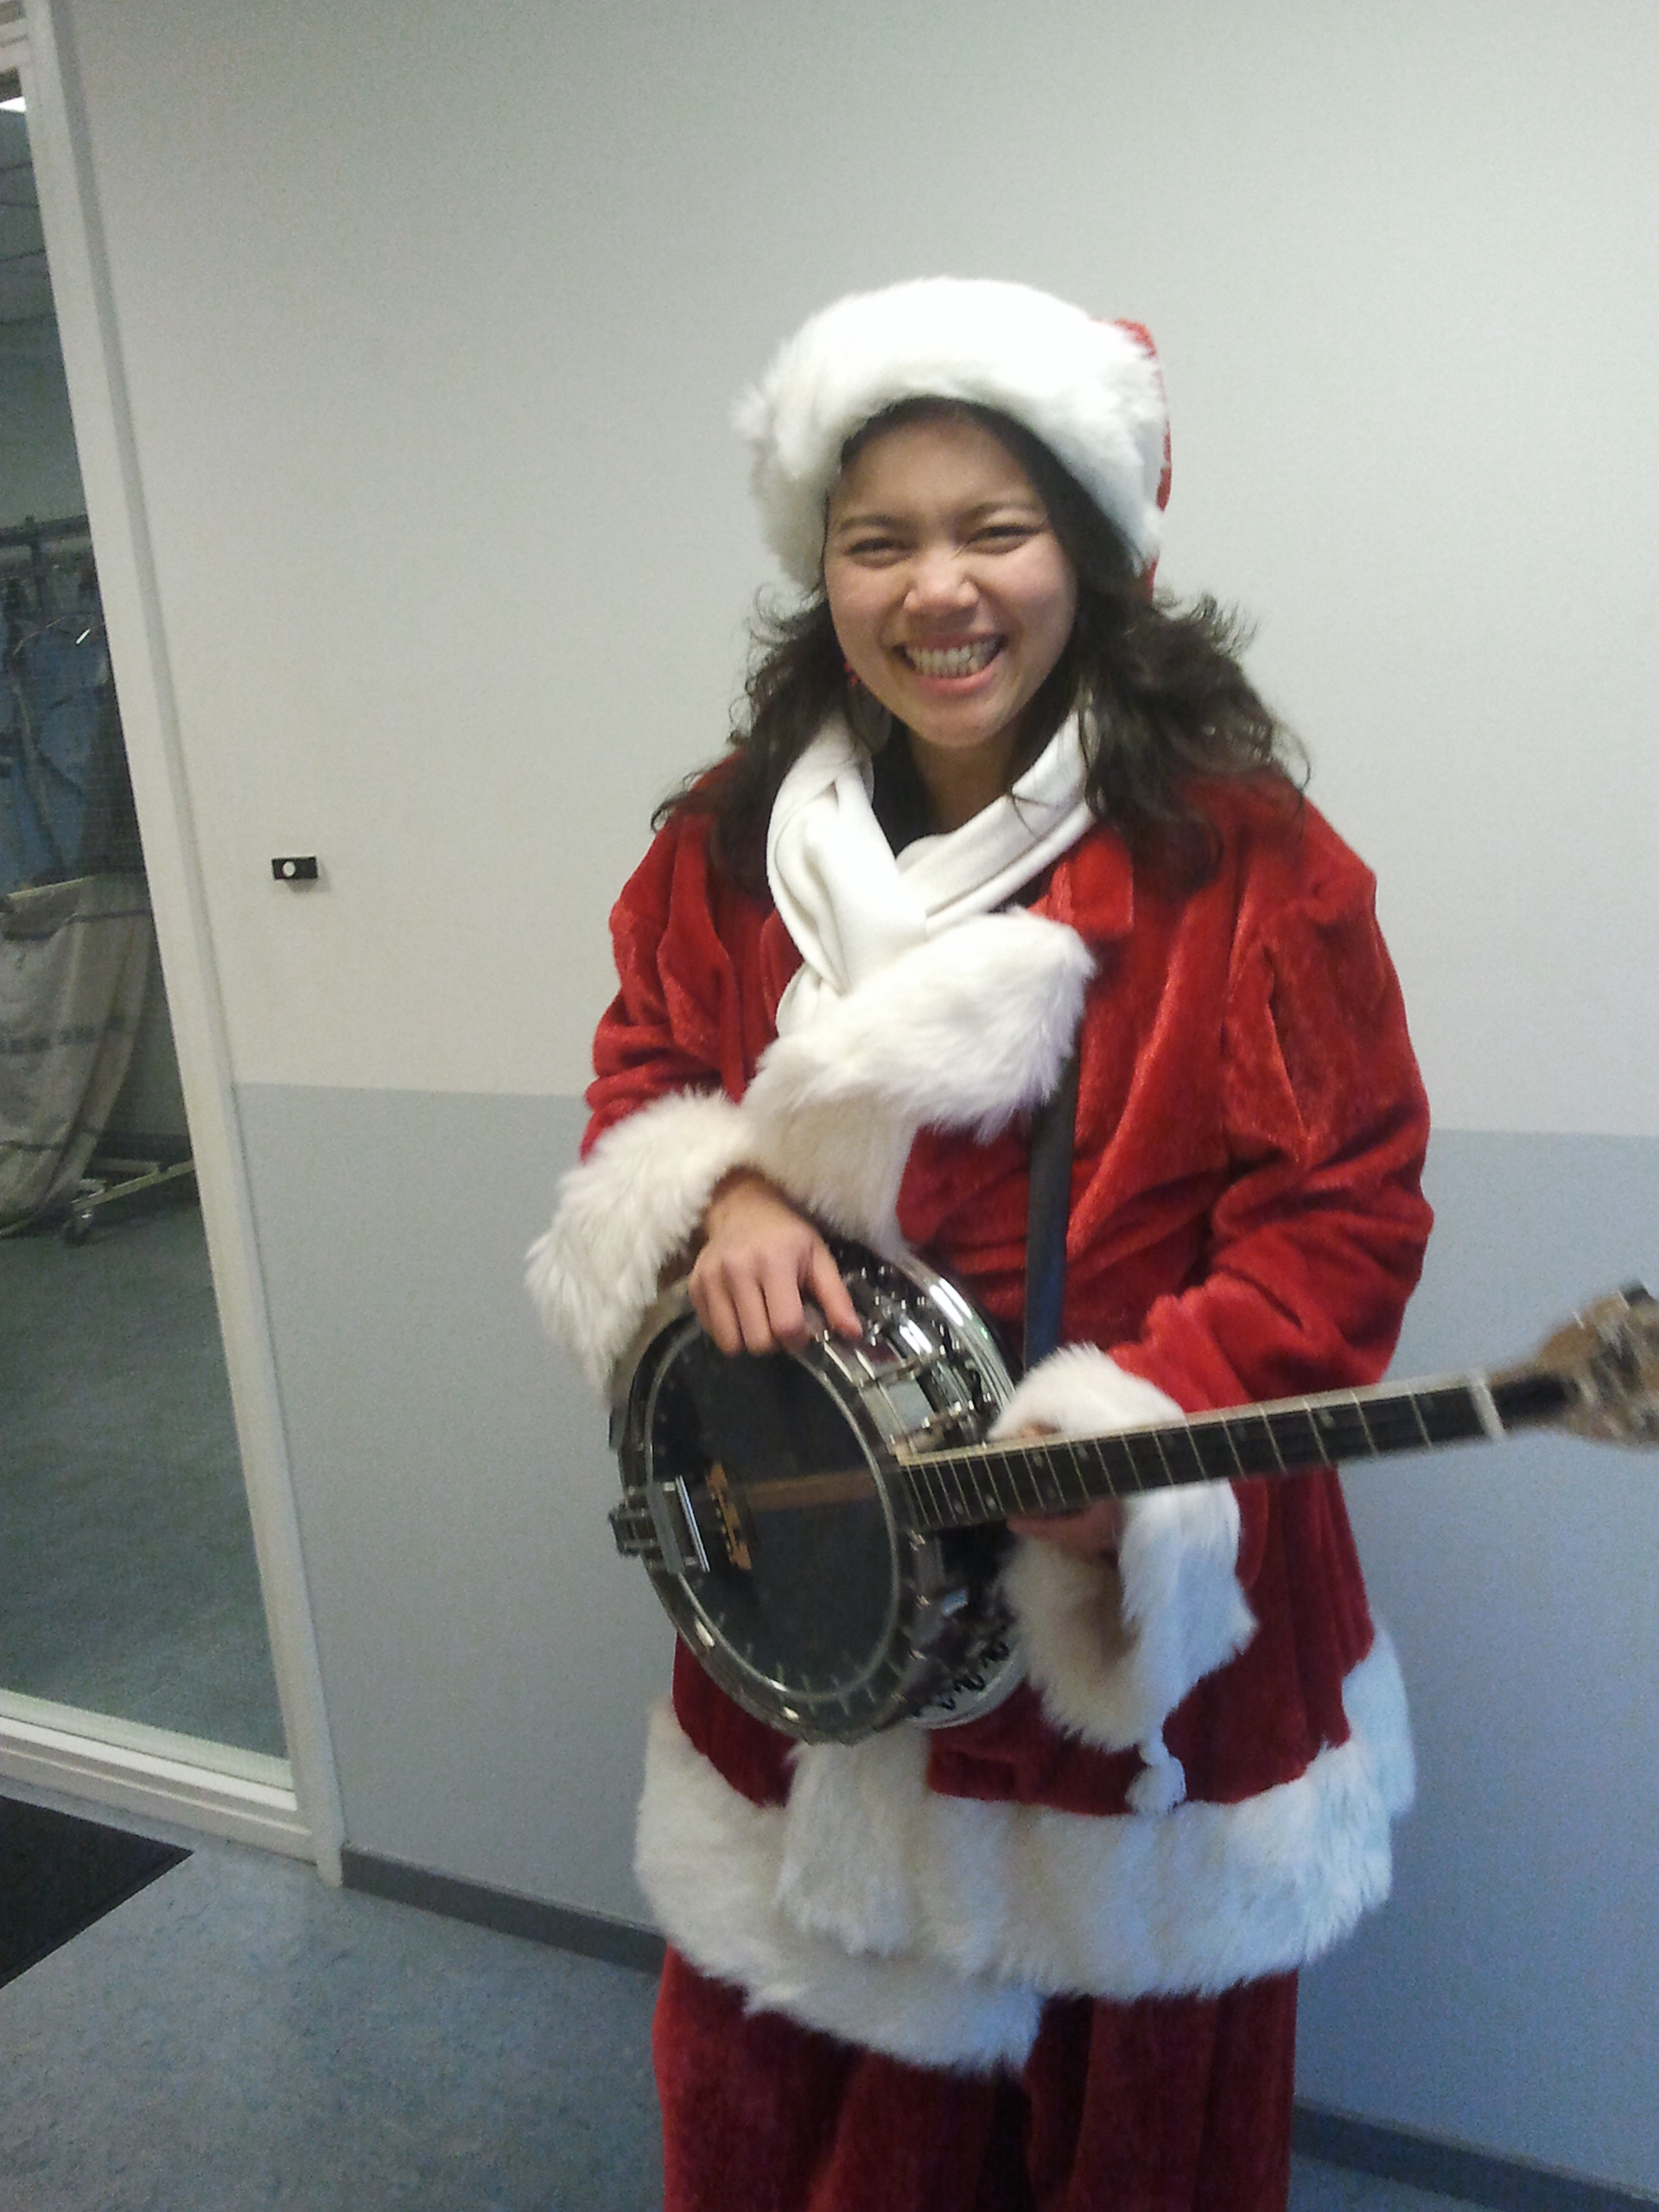 banjo-kerstvrouw